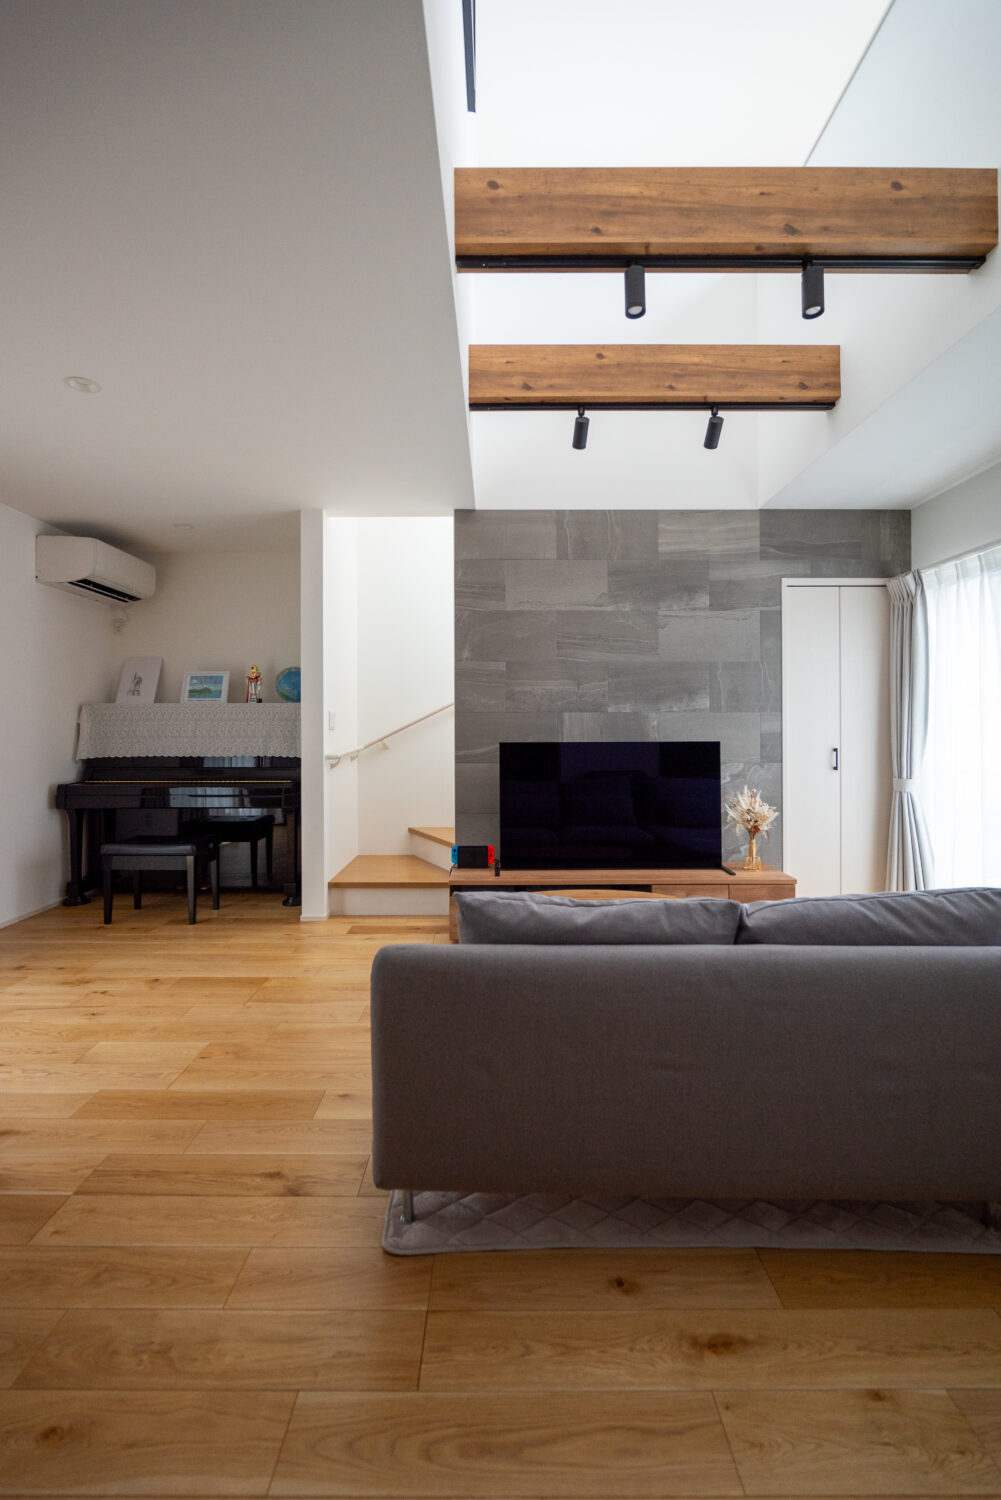 アイデザインホーム
注文住宅
広島県三原市
見上げると化粧梁が印象的なリビング。テレビ背面には調湿の機能性とデザイン性を併せ持ったグレーのエコカラットを採用し、空間のアクセントに。床には突板のナラ材を用いています
